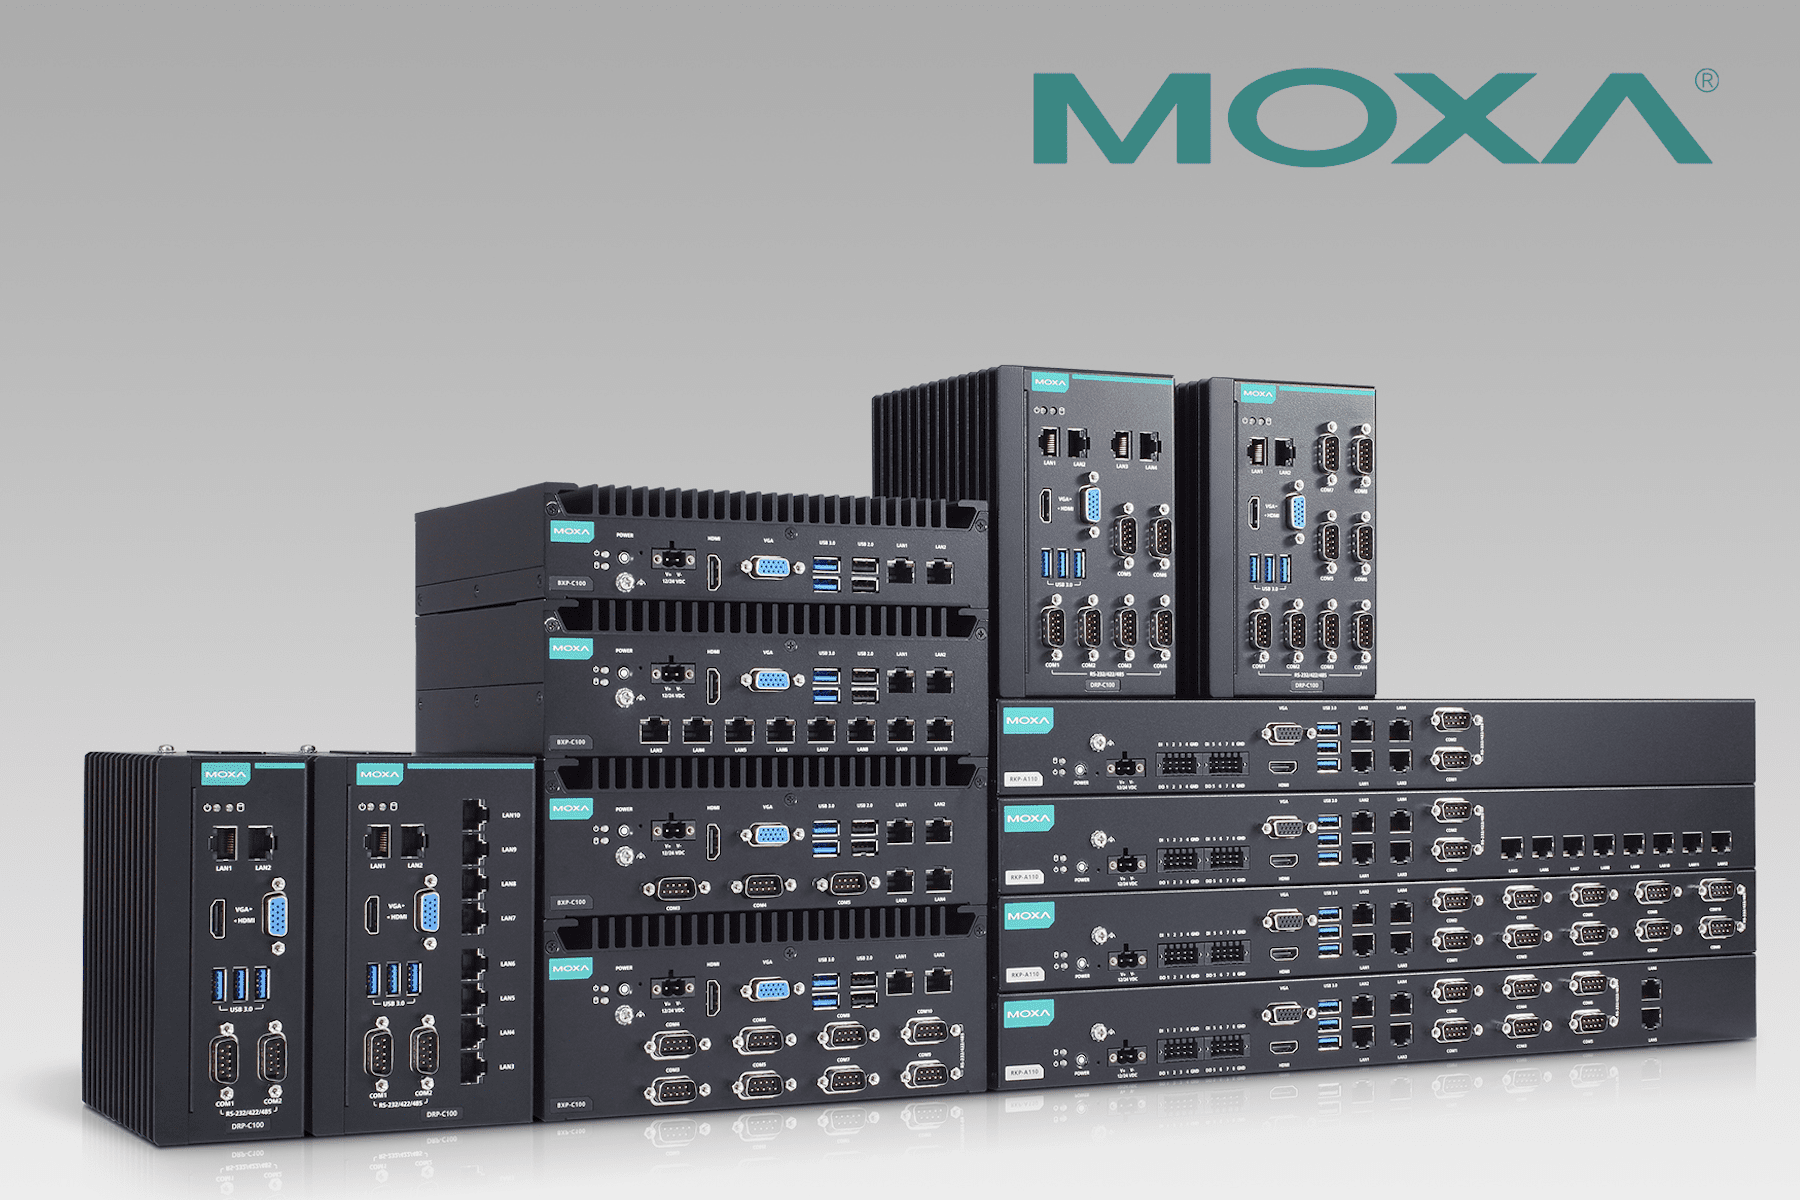 開創工業邊緣資料連結新格局-moxa-揭示新一代-x86-工業電腦